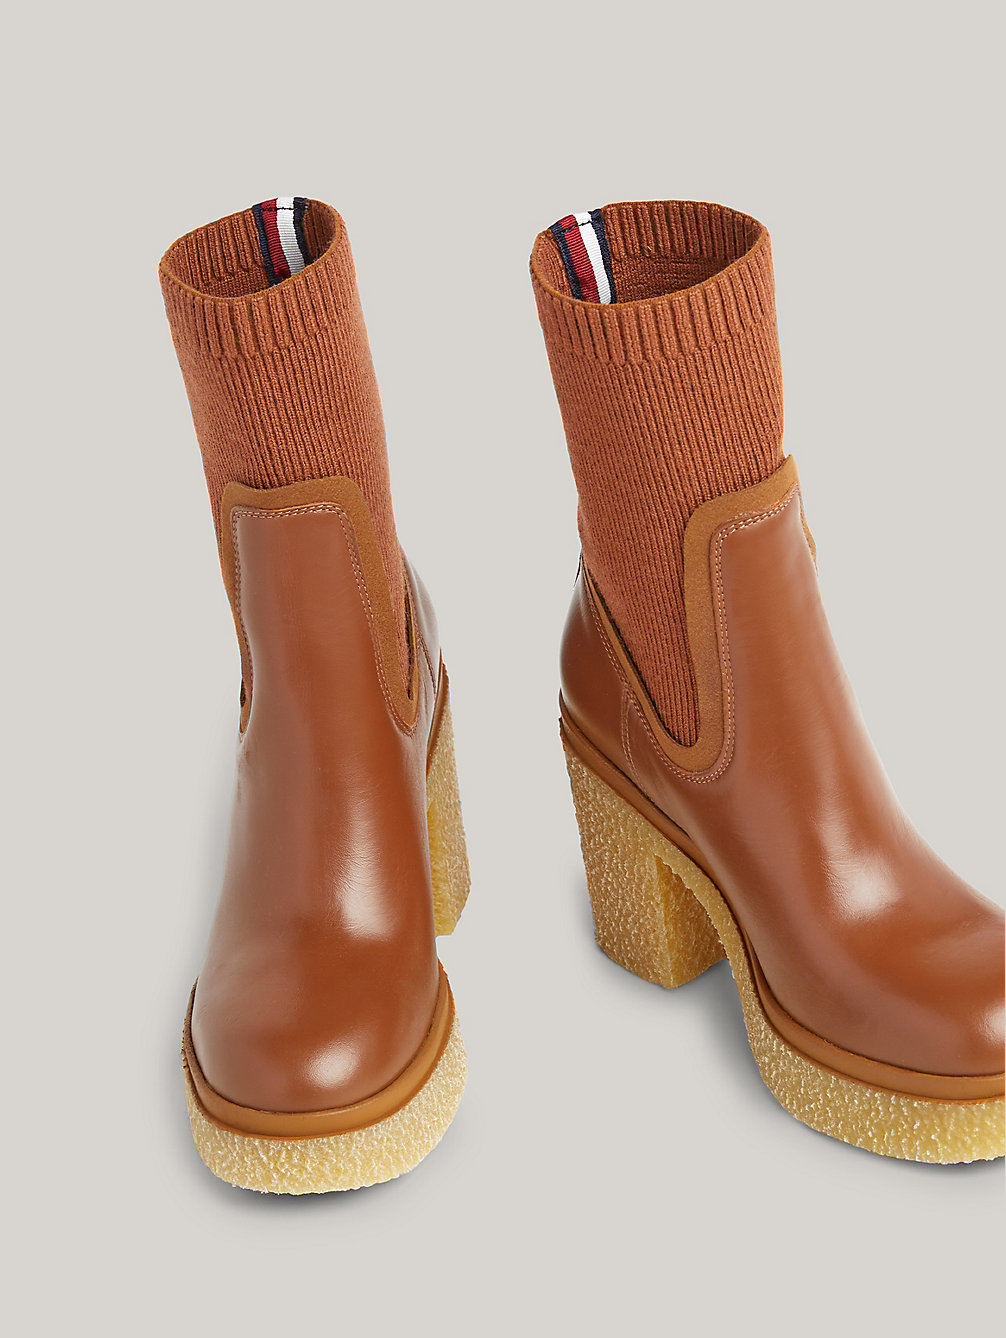 brown leder-sock-boot mit absatz und krepp-sohle für damen - tommy hilfiger